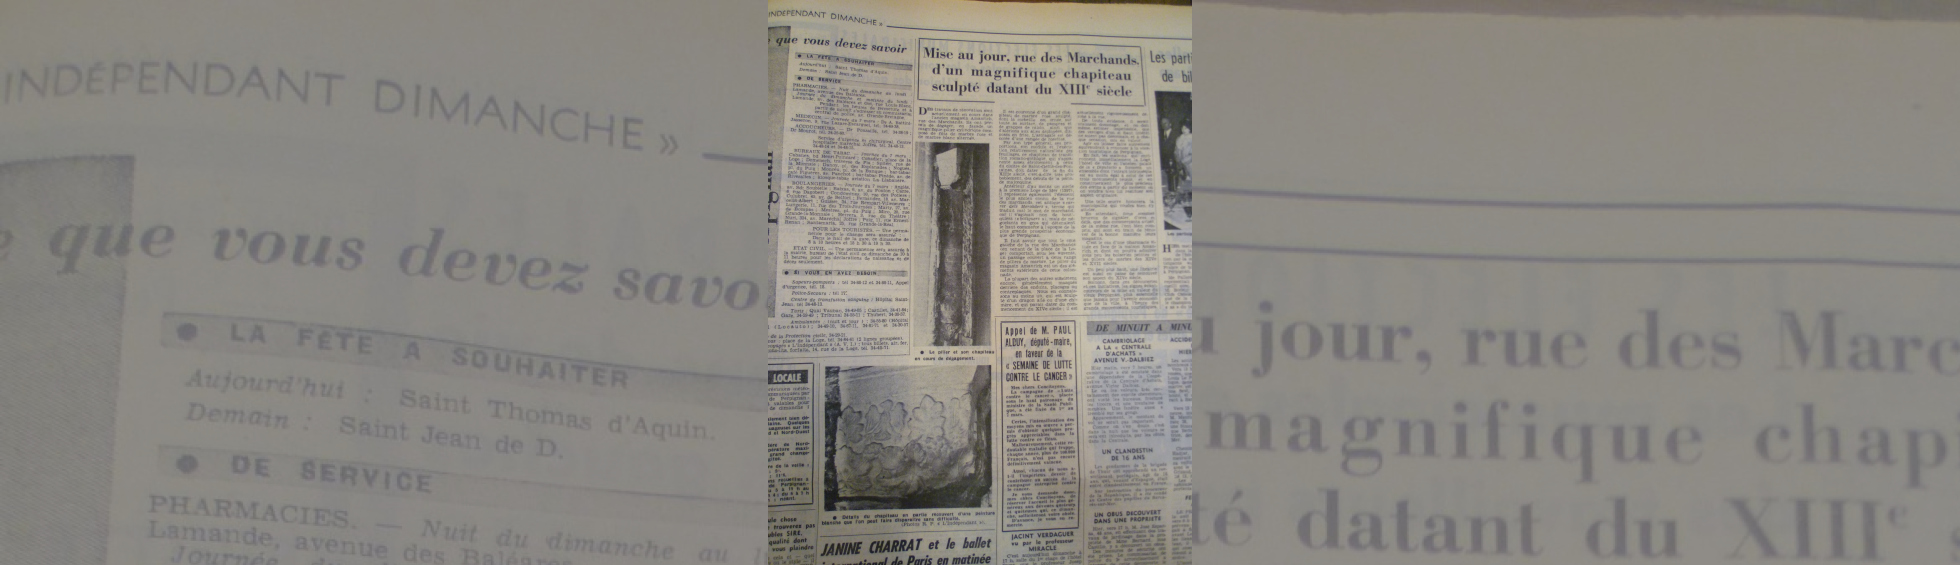 Un artcle du  journal l'Indépendant de 1965:redecouverte d'un chapiteau pendant les travaux d'un magasin